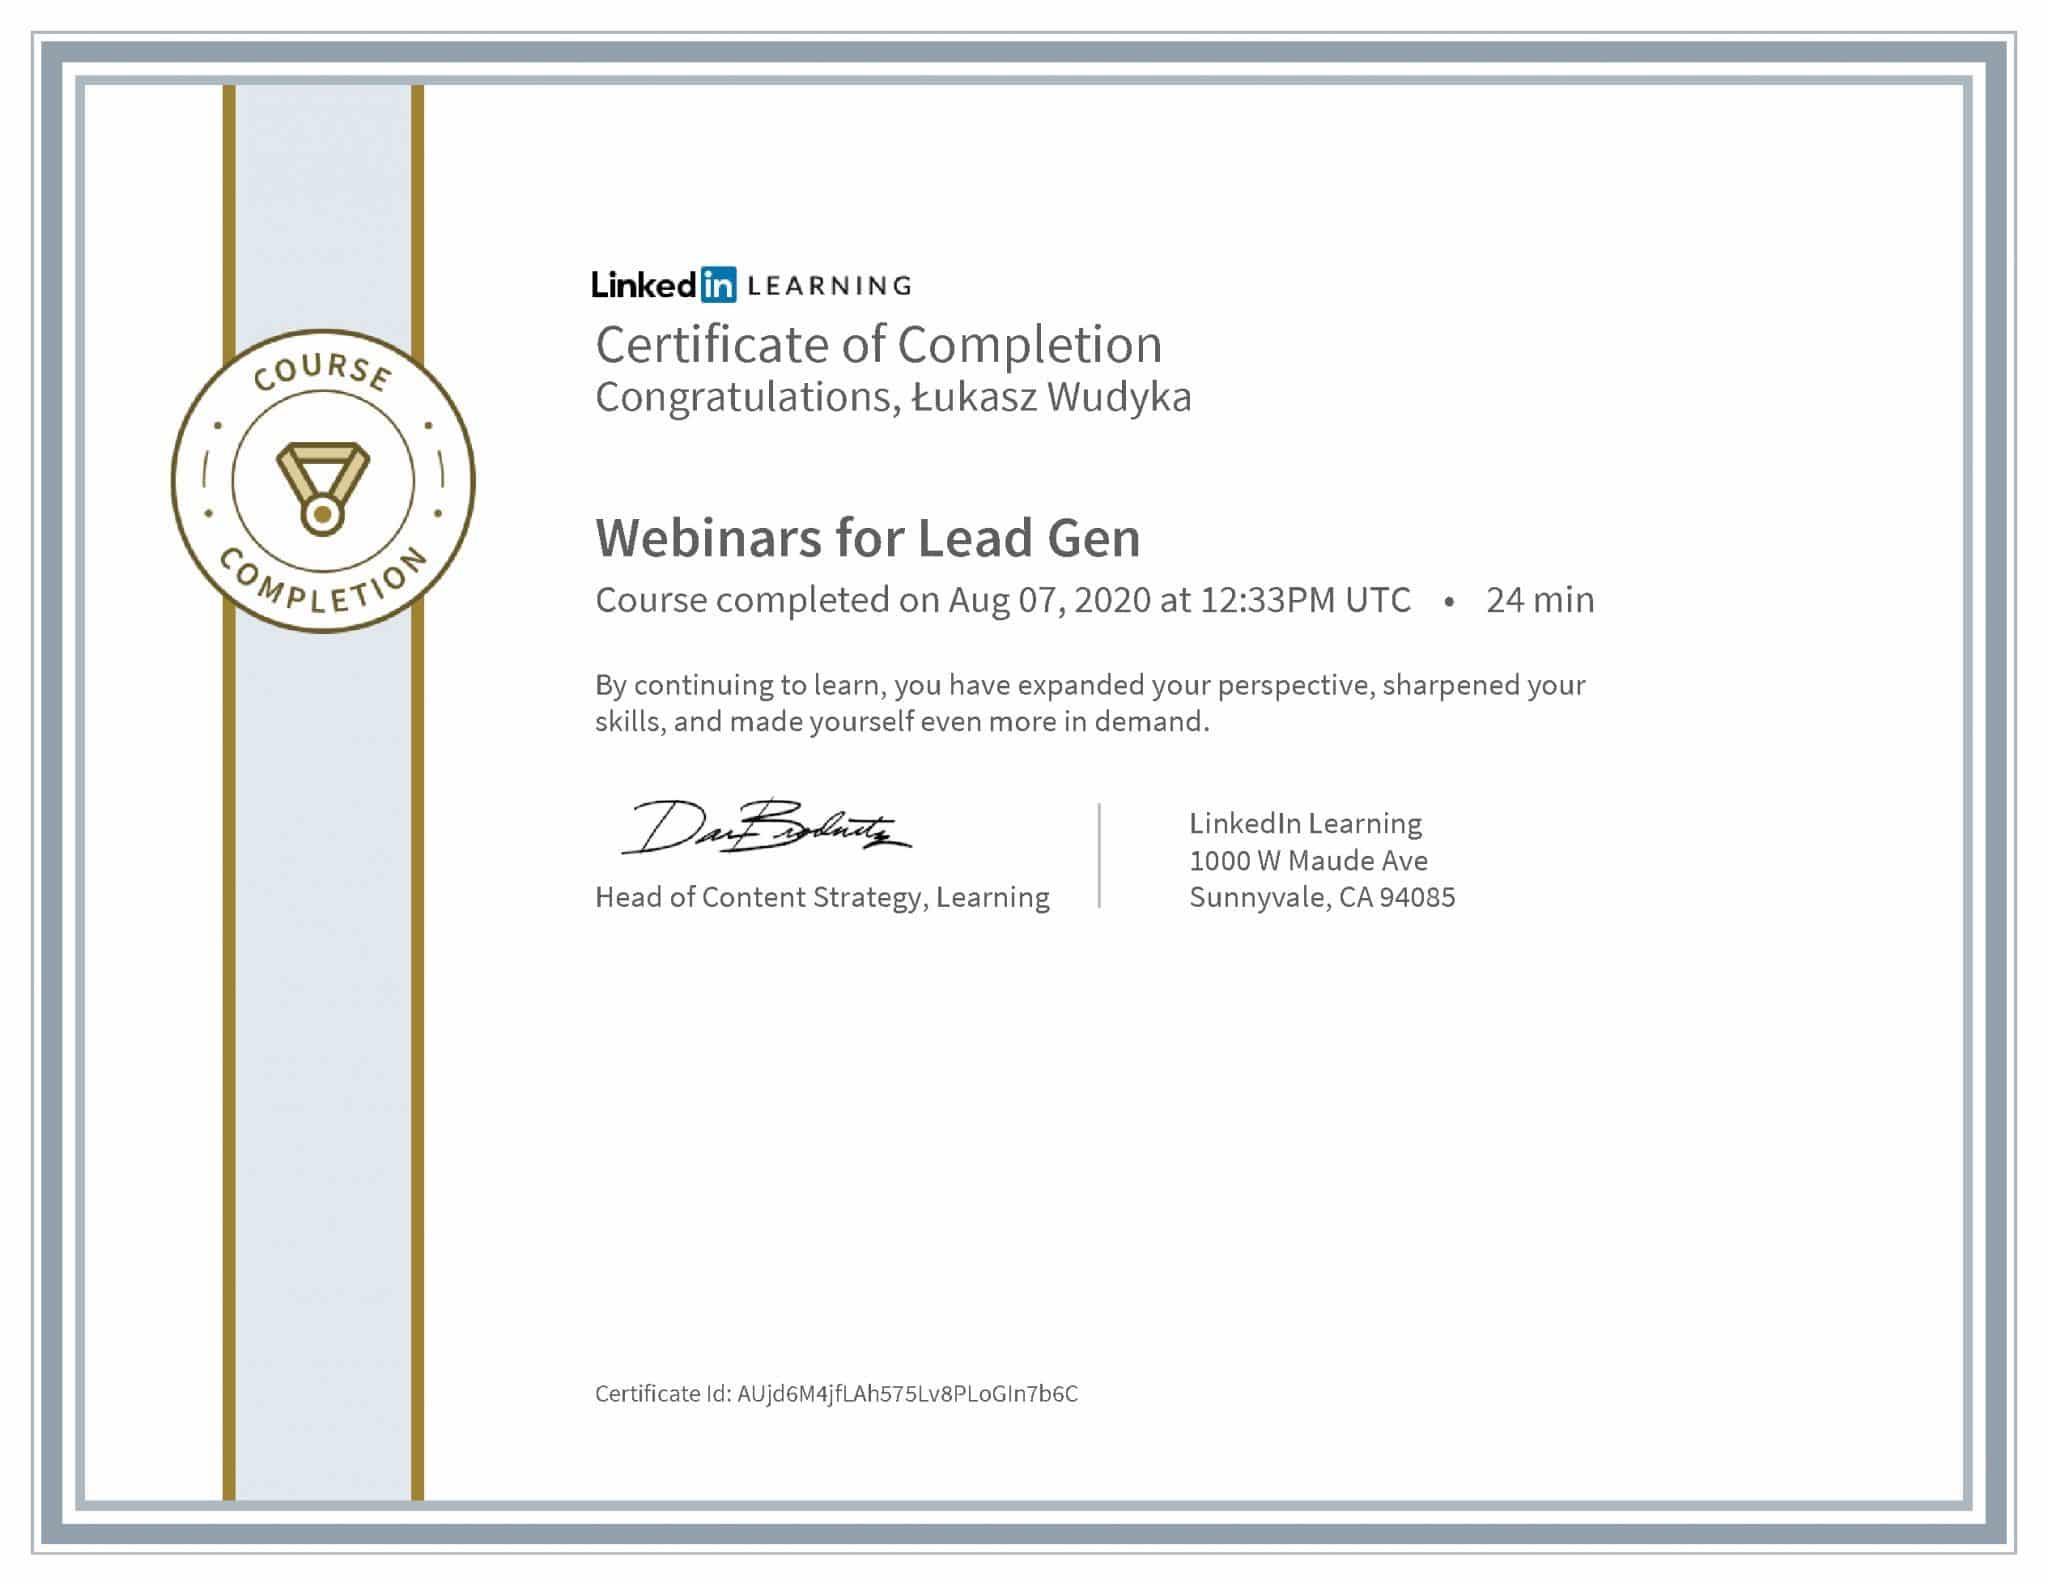 Łukasz Wudyka certyfikat LinkedIn Webinars for Lead Gen